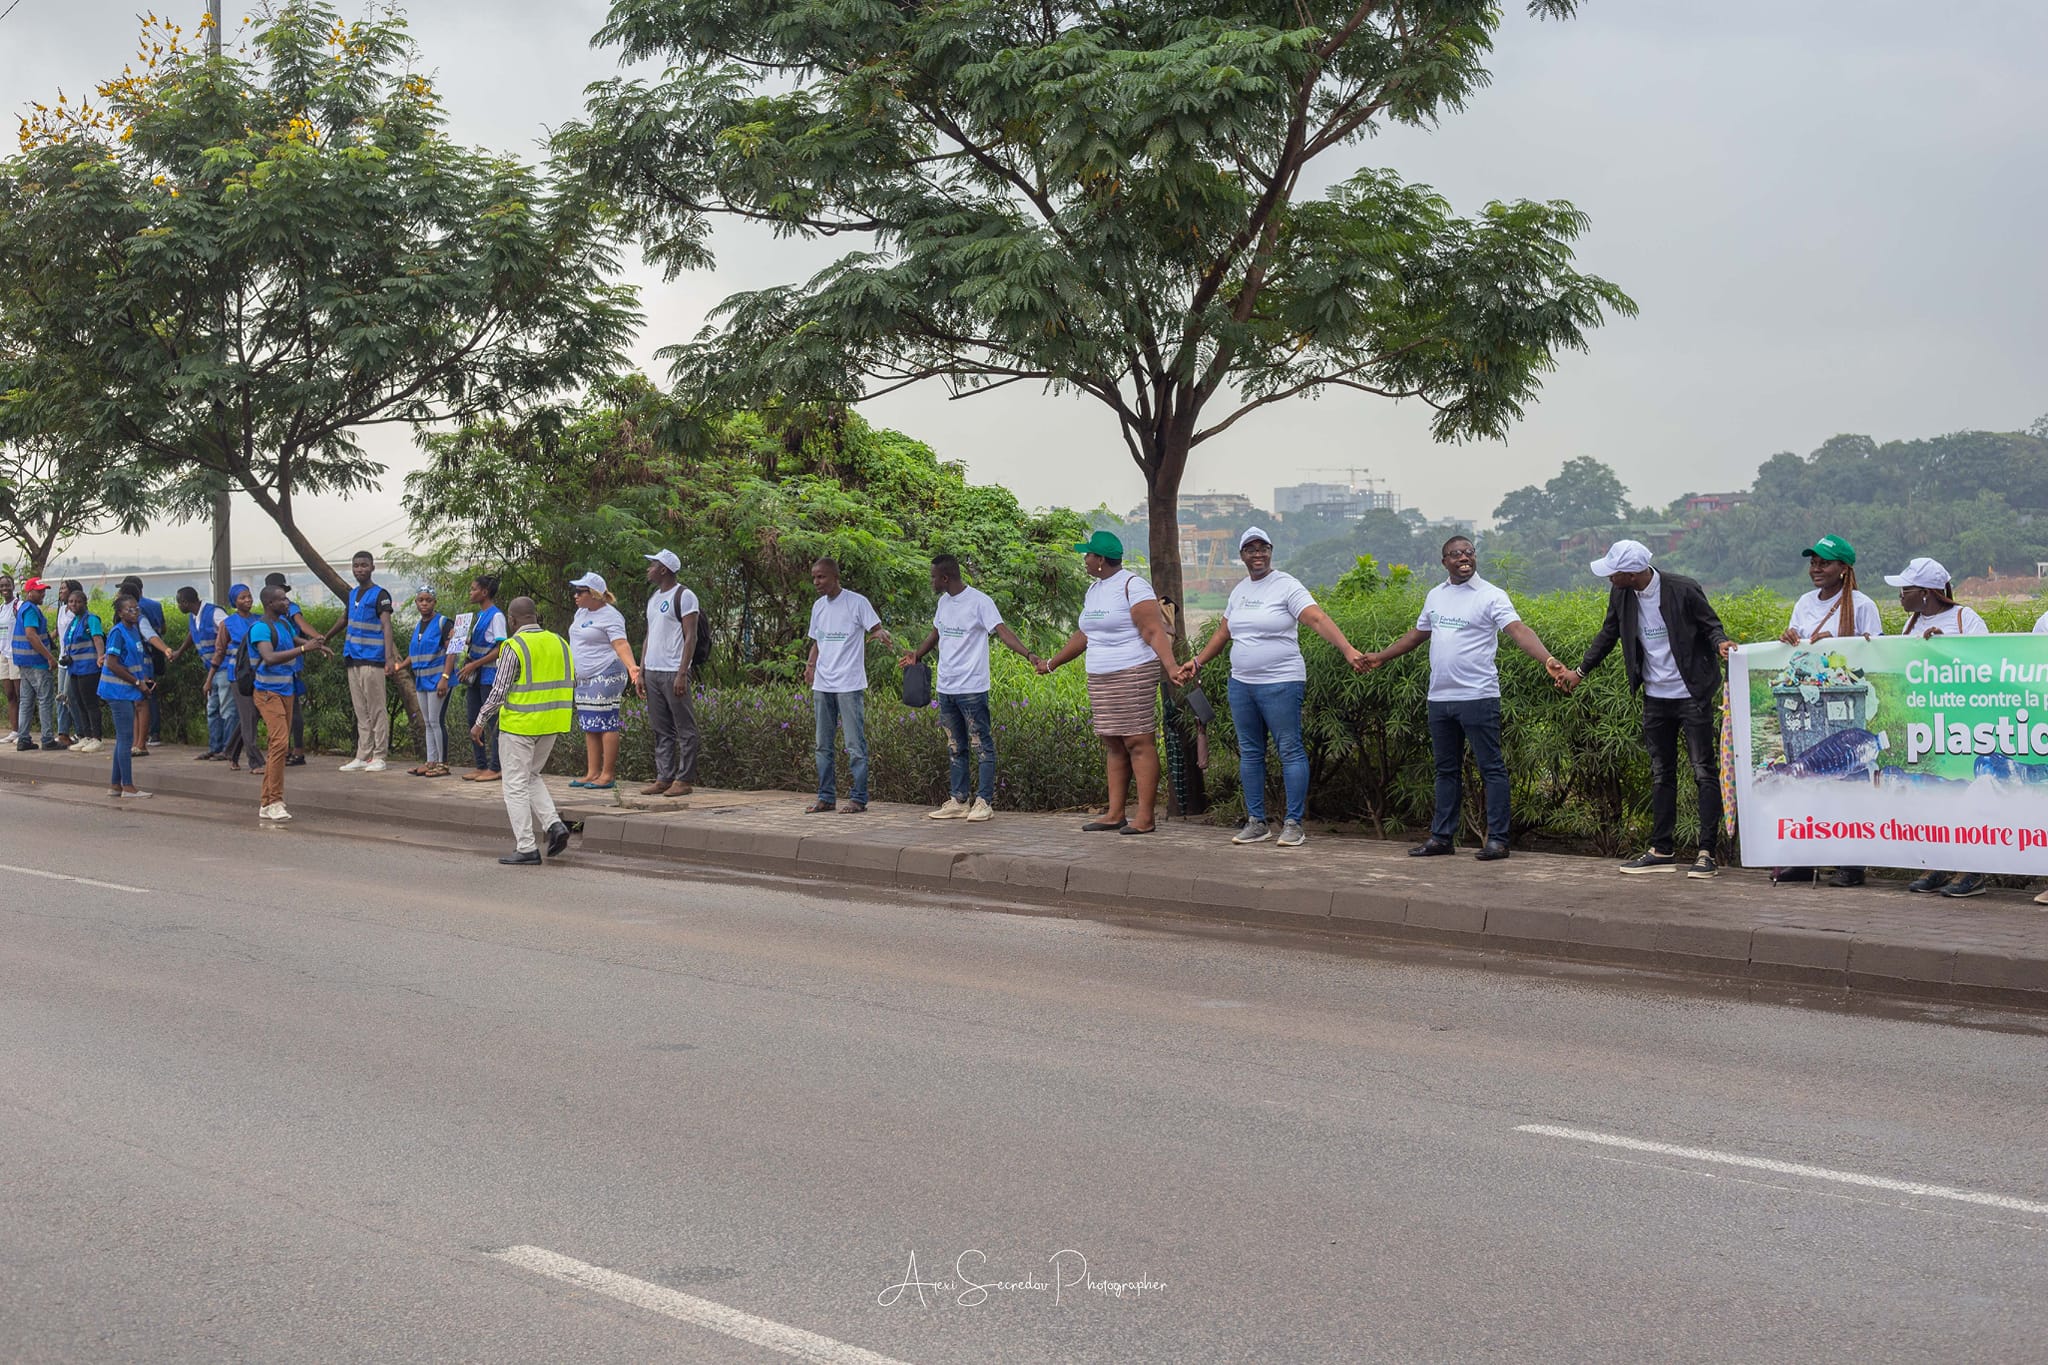 lutte-contre-la-pollution-plastique-plus-de-1000-jeunes-ivoiriens-dans-une-chaine-humaine-a-abidjan